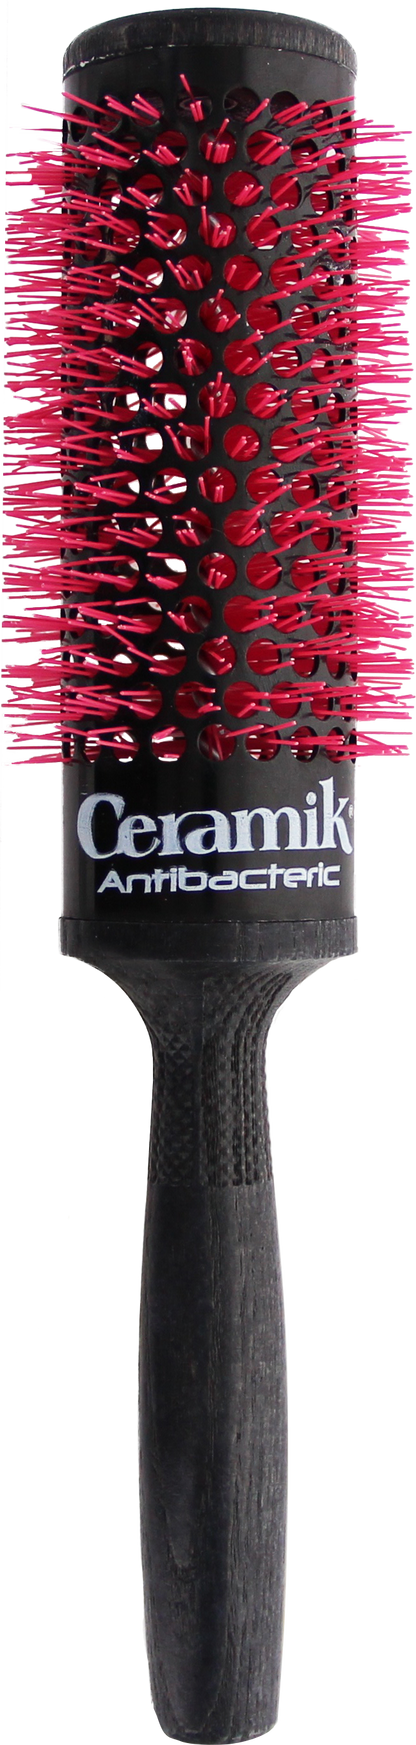 Tek Ceramik Antibateric Oxy Round Brush 42mm